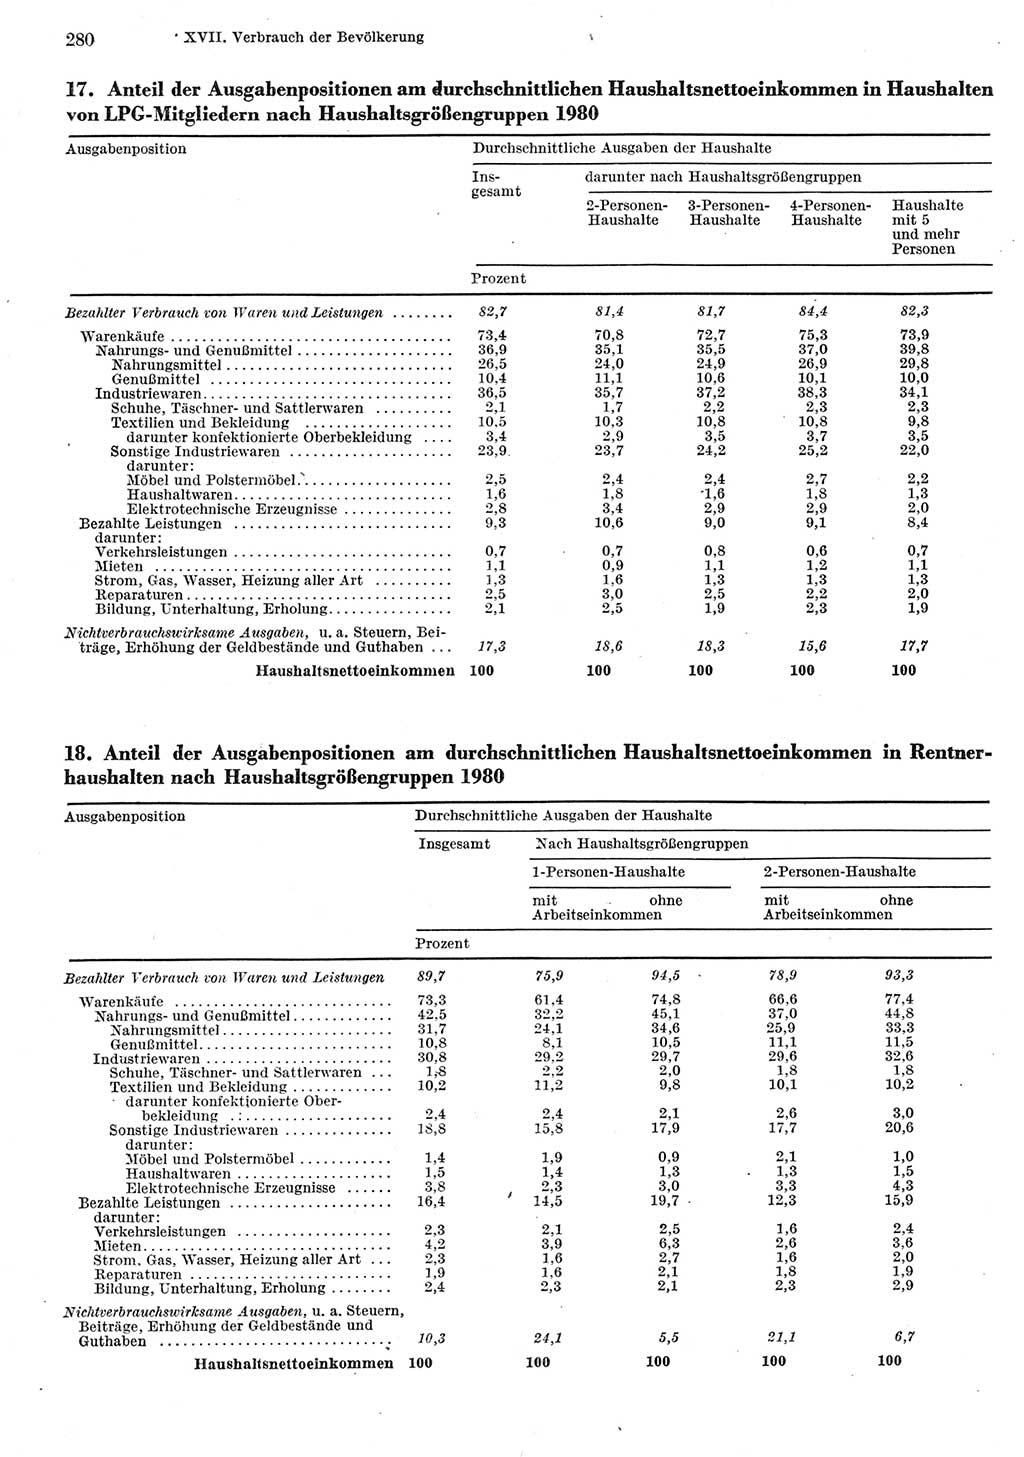 Statistisches Jahrbuch der Deutschen Demokratischen Republik (DDR) 1981, Seite 280 (Stat. Jb. DDR 1981, S. 280)